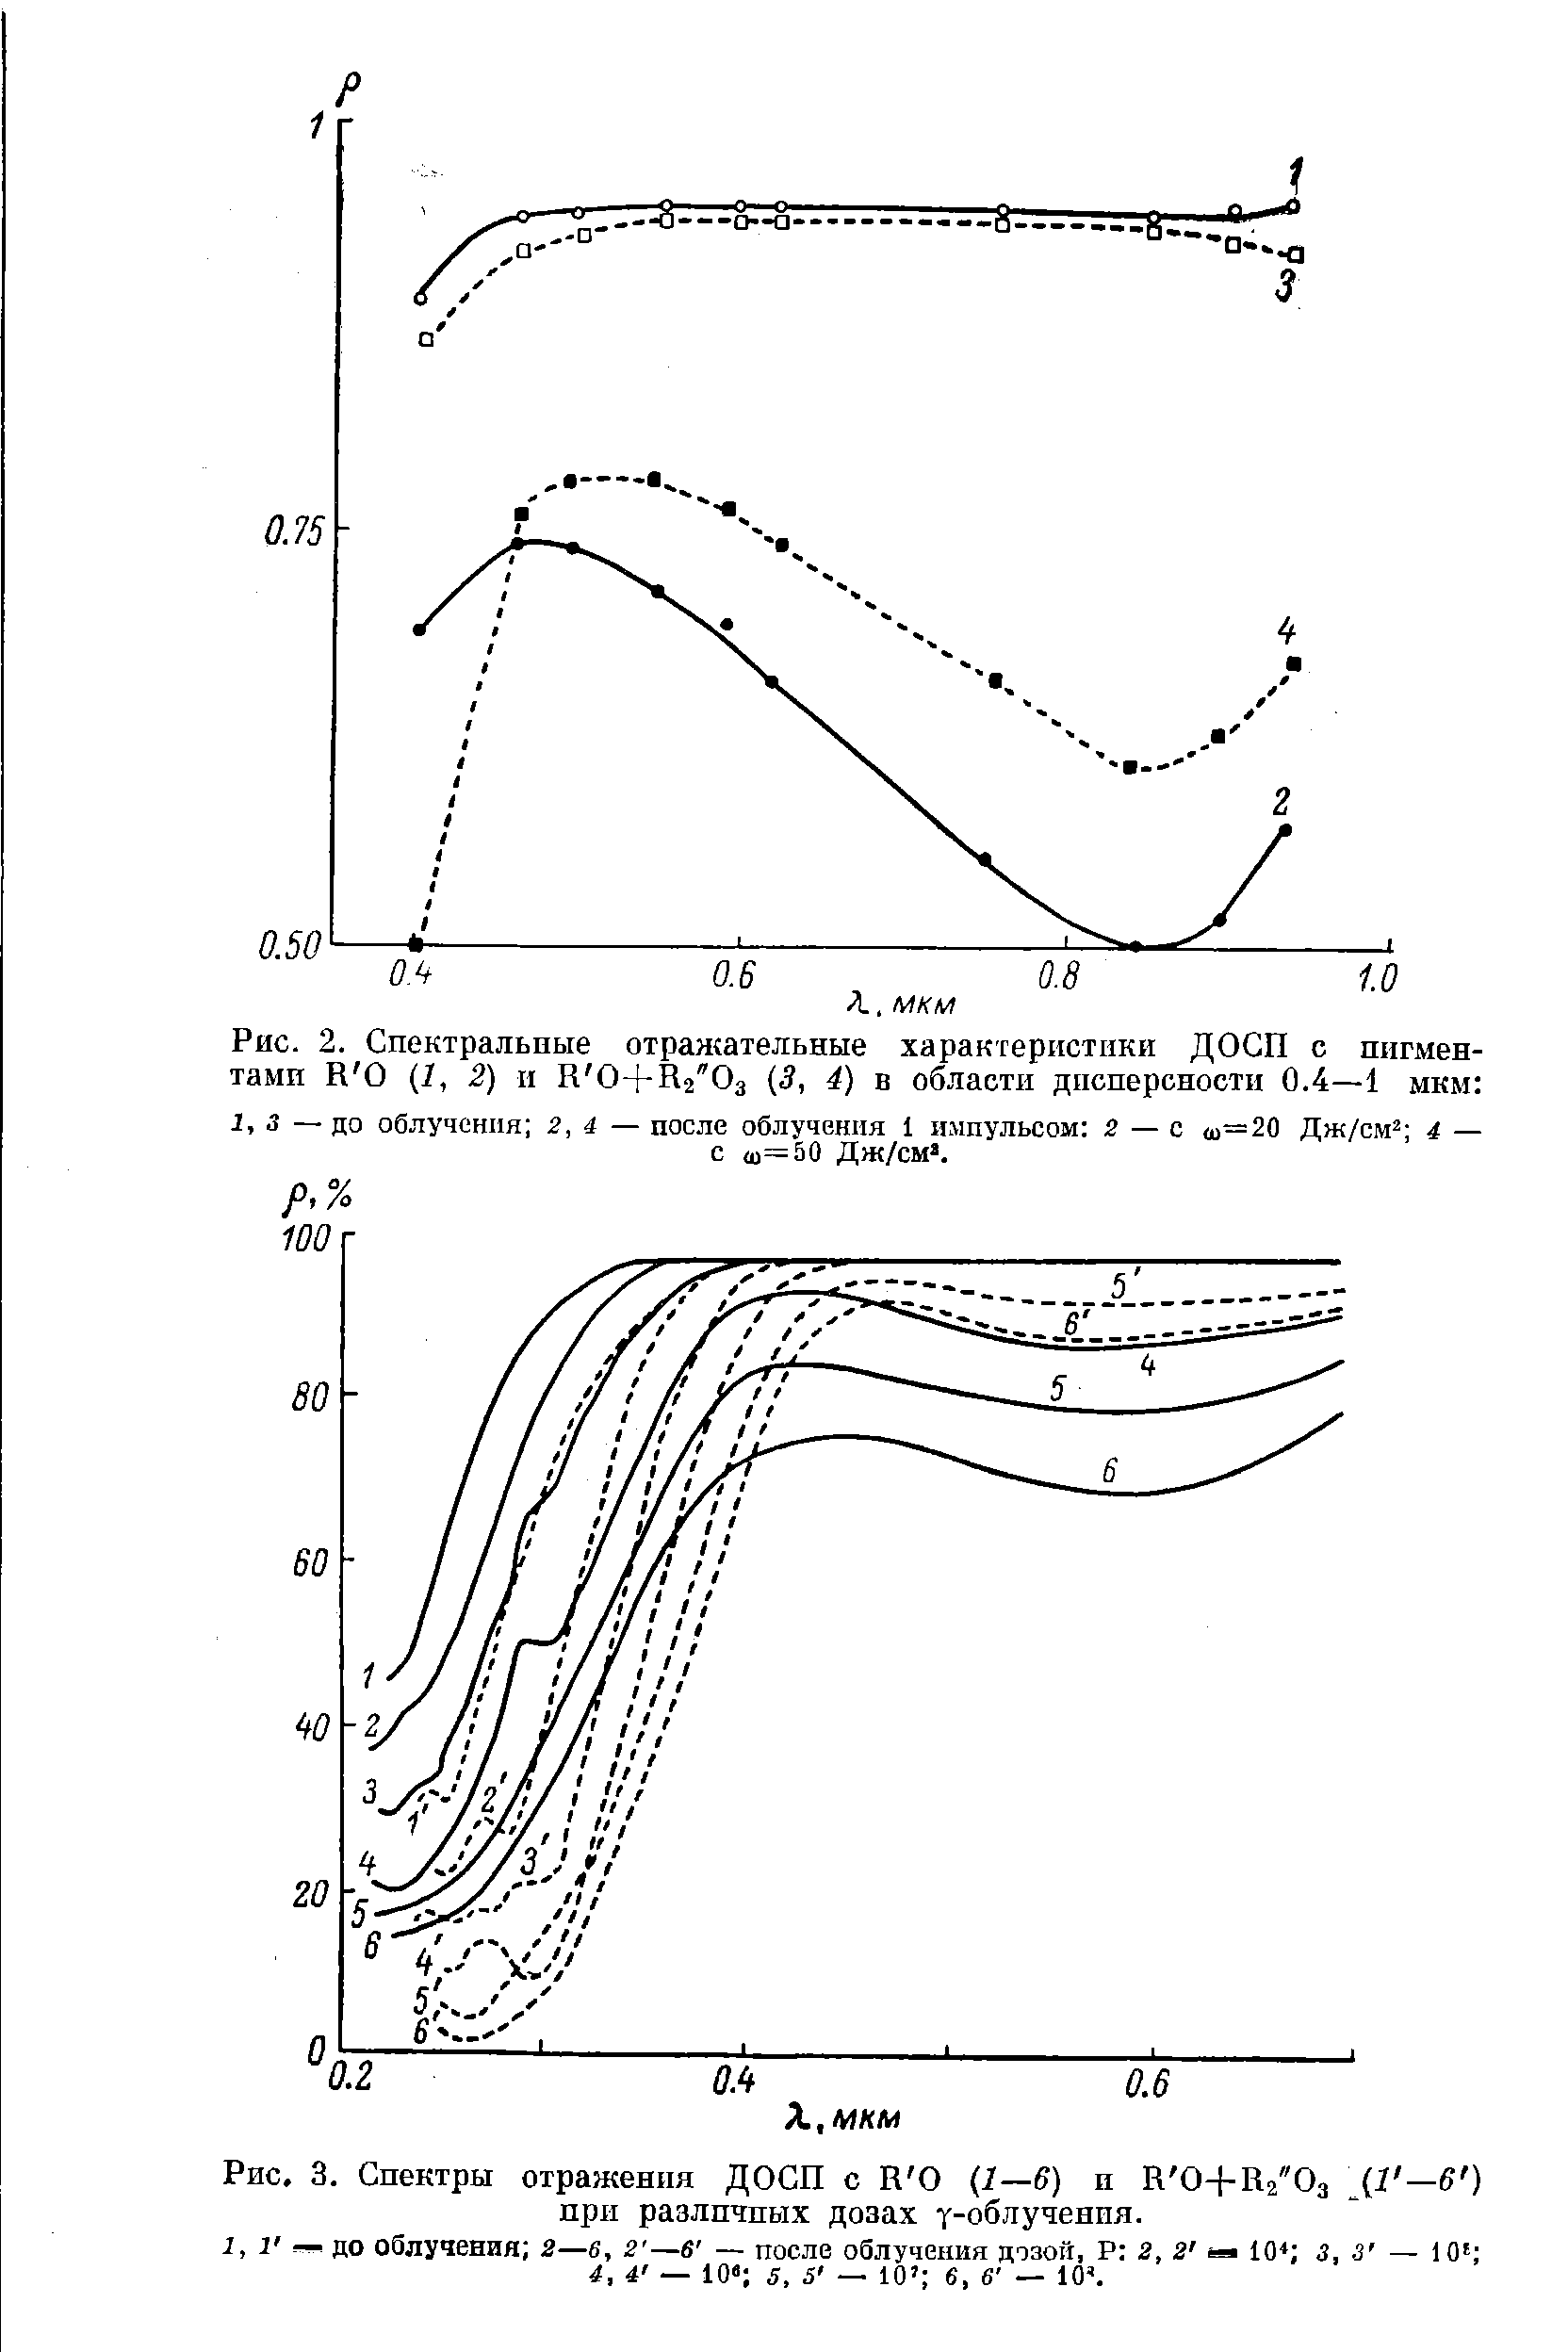 Рис. 3. Спектры отражения ДОСП с Н О Ц—6) и Н 0-ЬПг"Оз —3 ) при различных дозах у-облучения.
